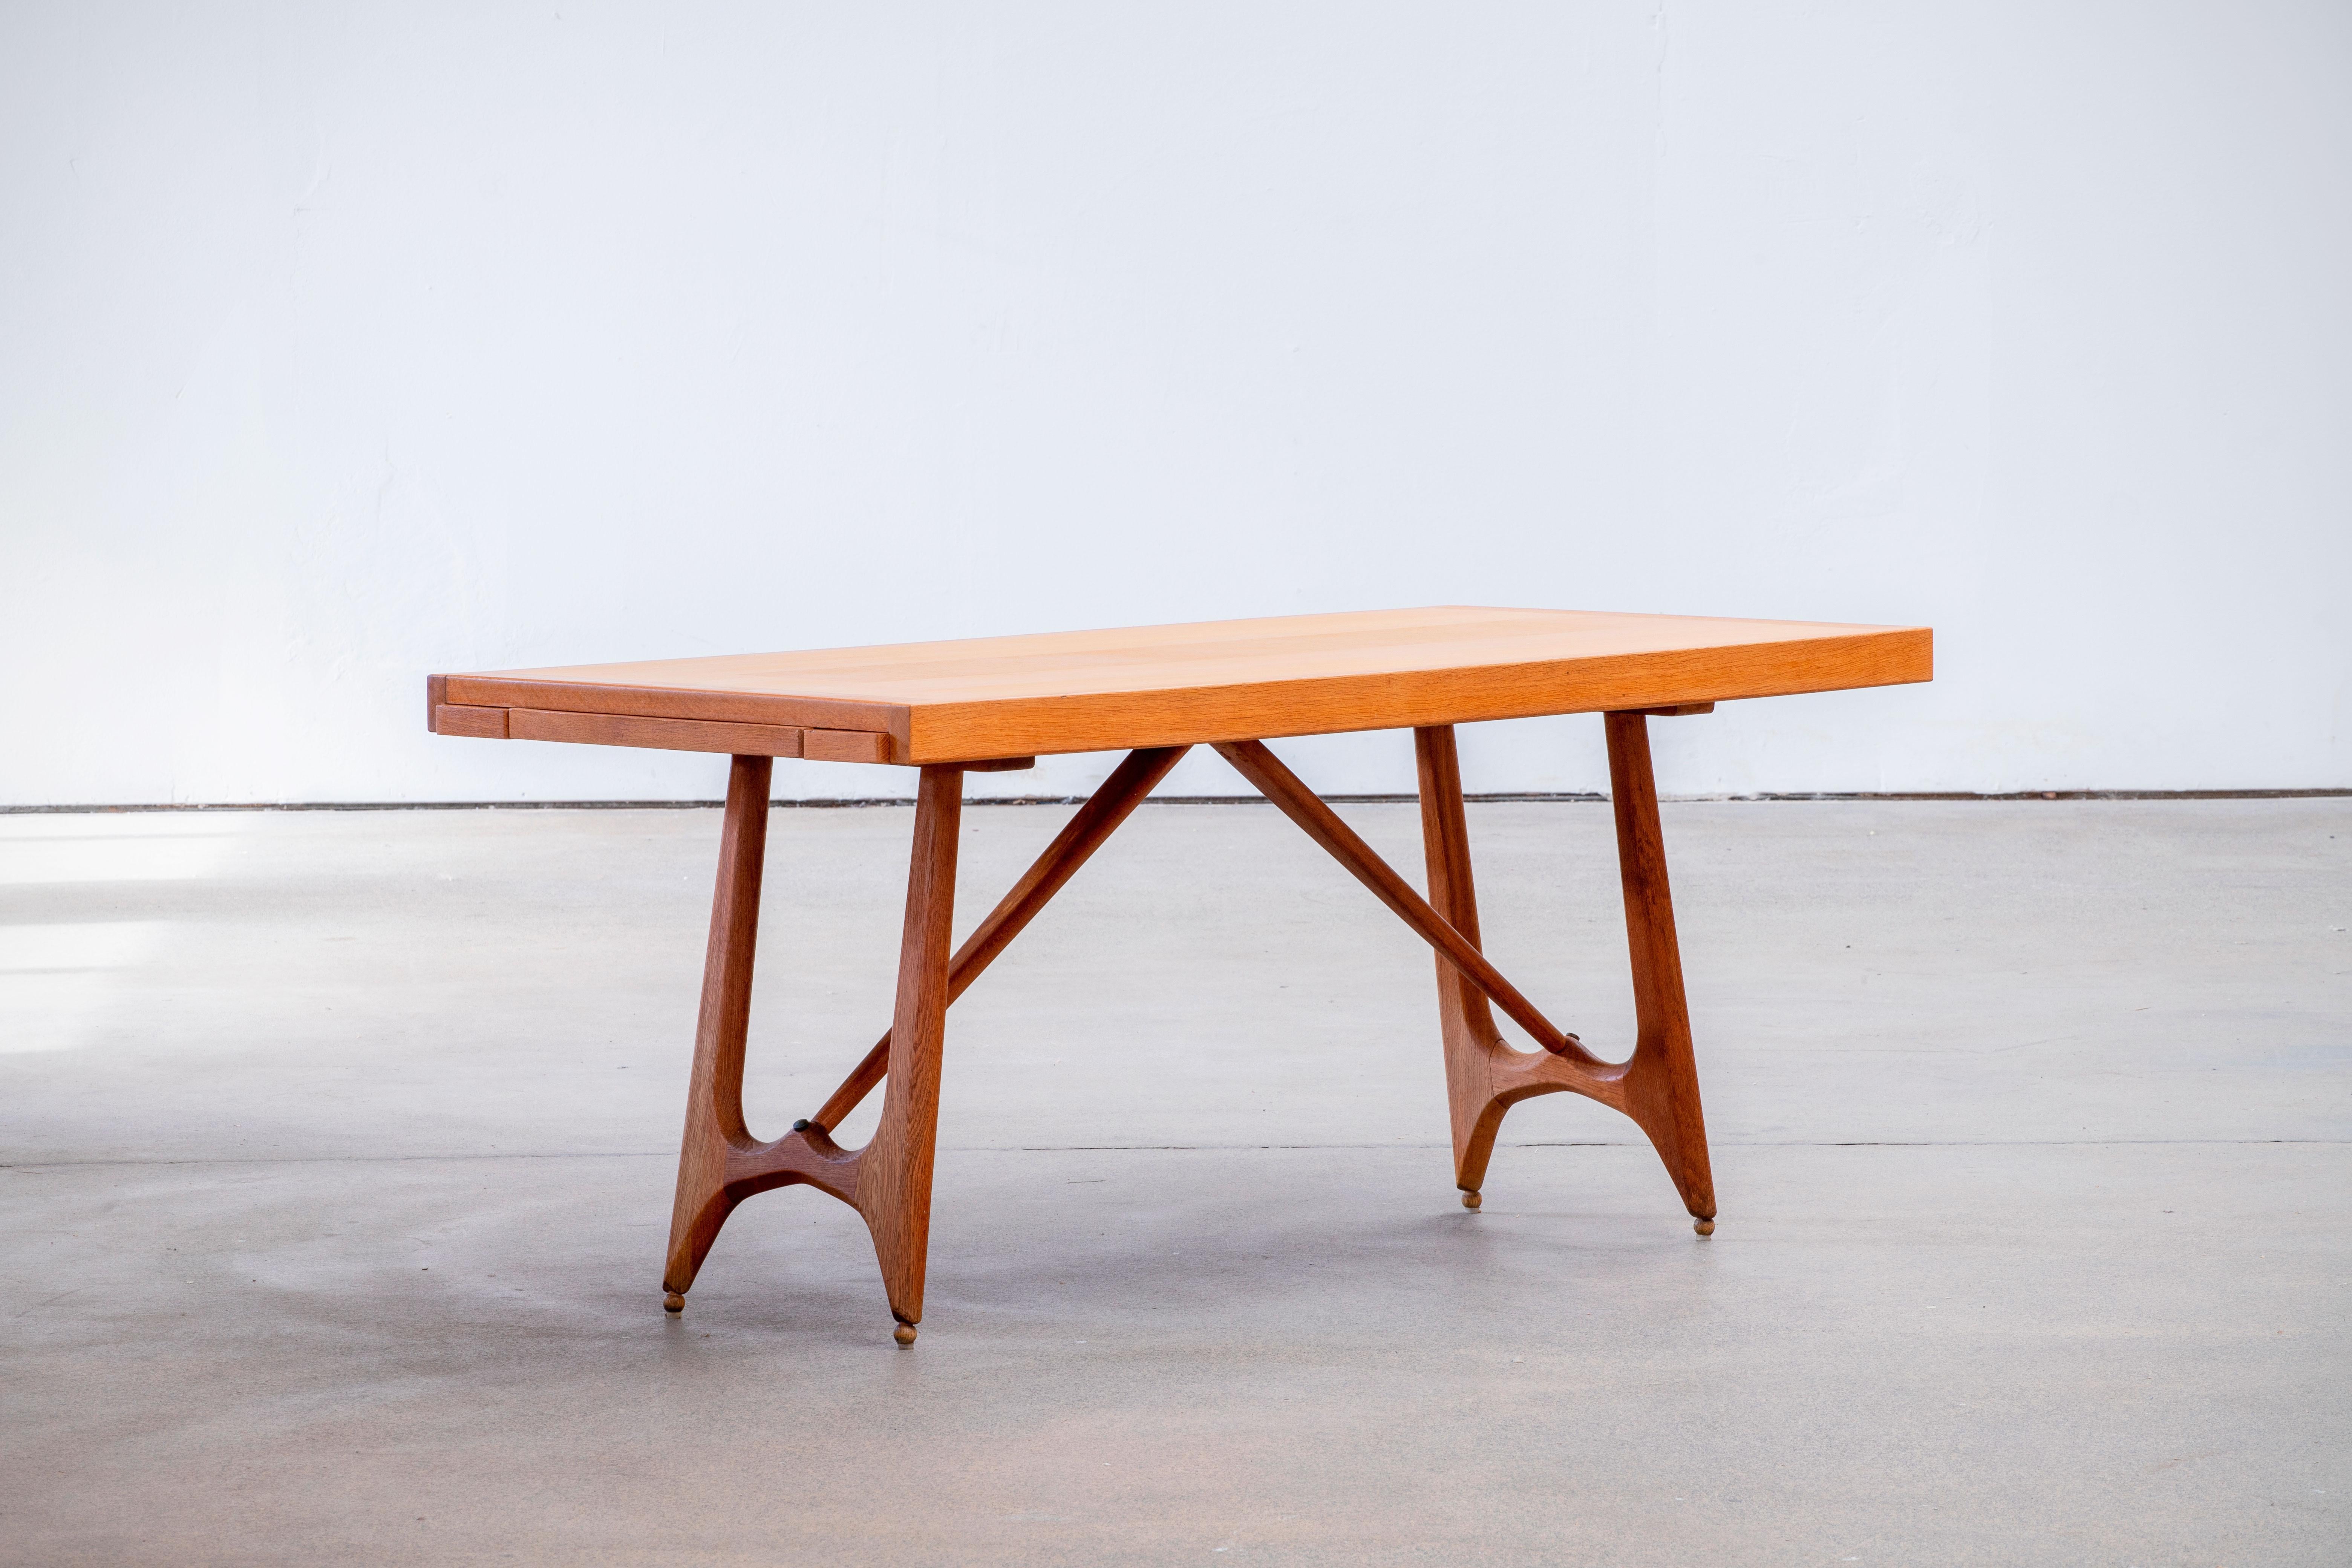 Table de salle à manger à rallonge du duo de designers français Jacques Chambron et Robert Guillerme. Les pieds de cette table sont magnifiquement façonnés et présentent de belles formes organiques. Le plateau est rectangulaire avec deux feuilles